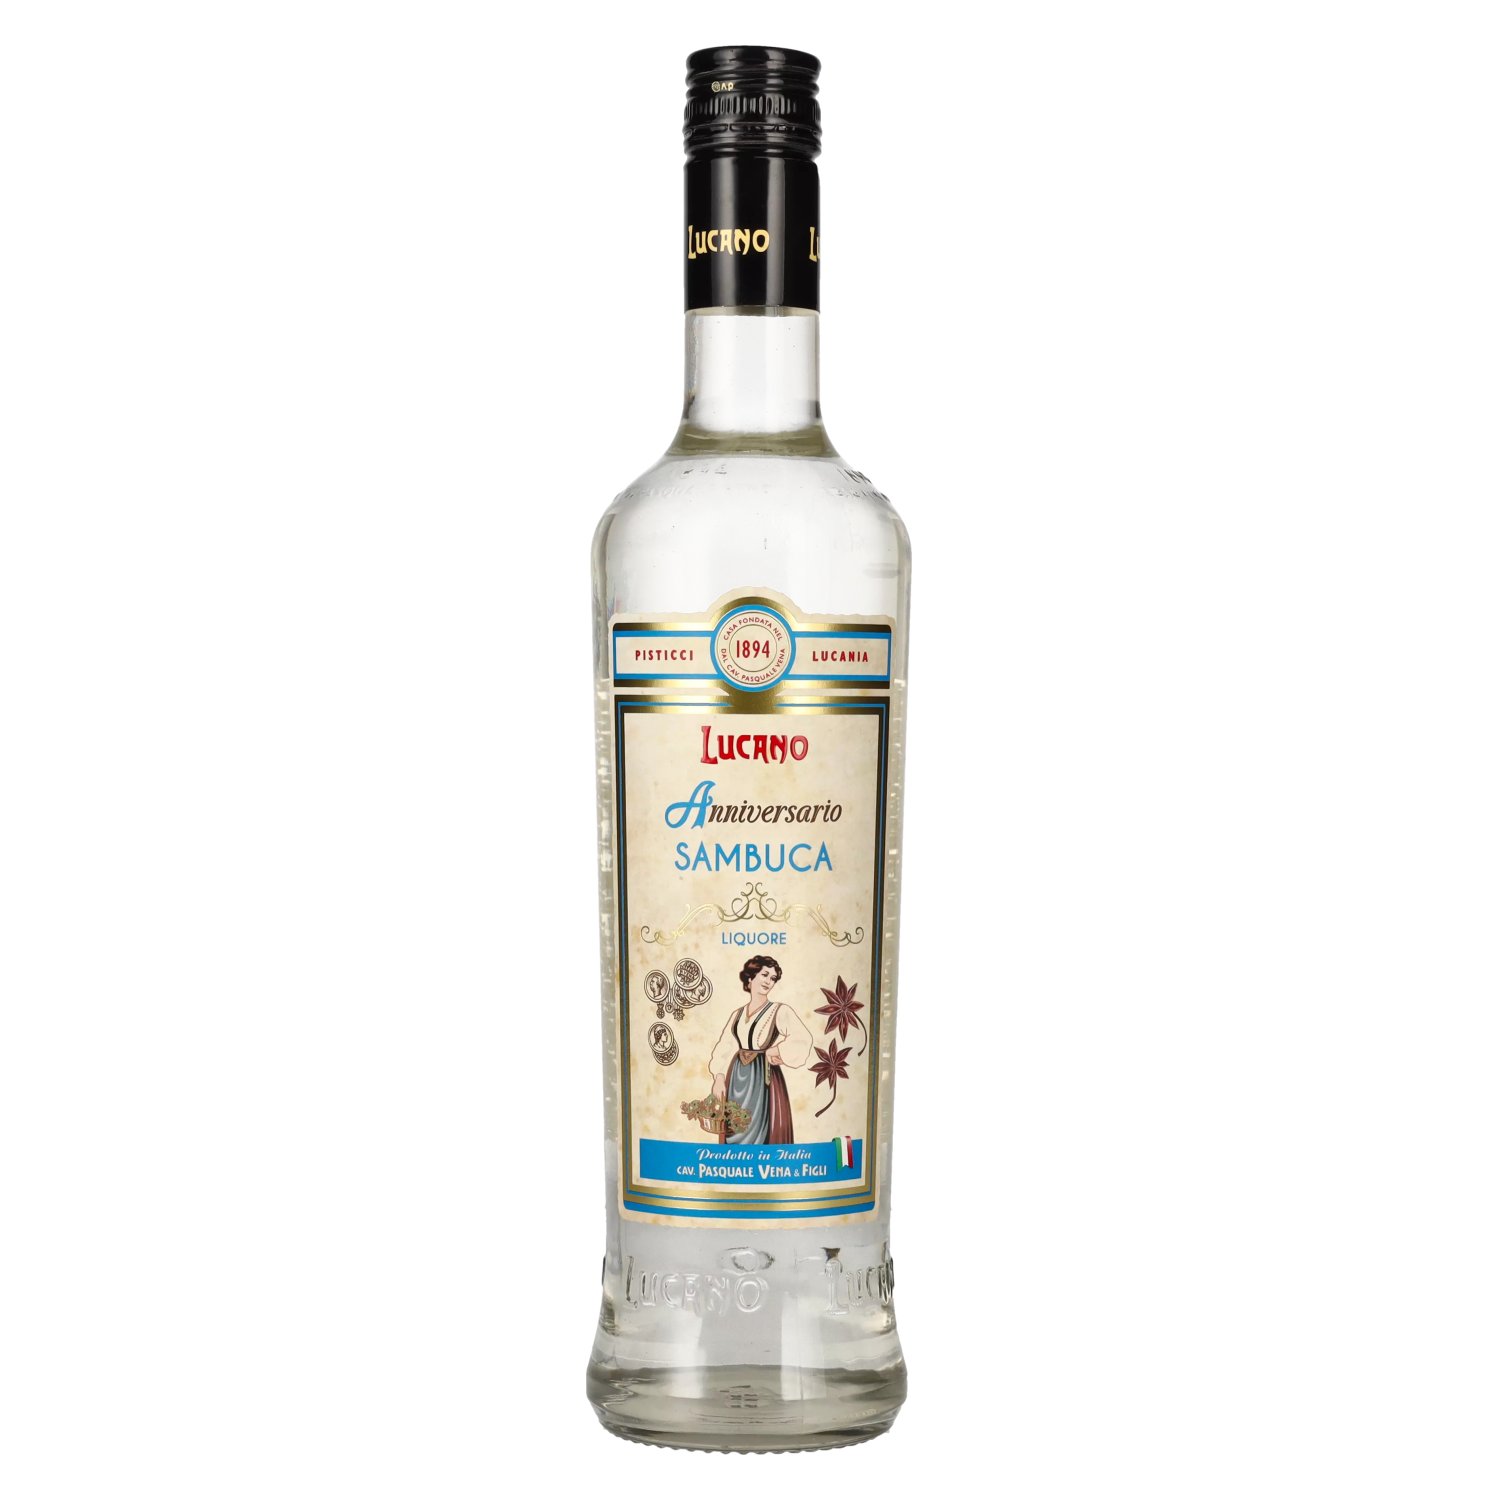 Lucano Sambuca 40% 0,7l delicando Vol. - Liquore